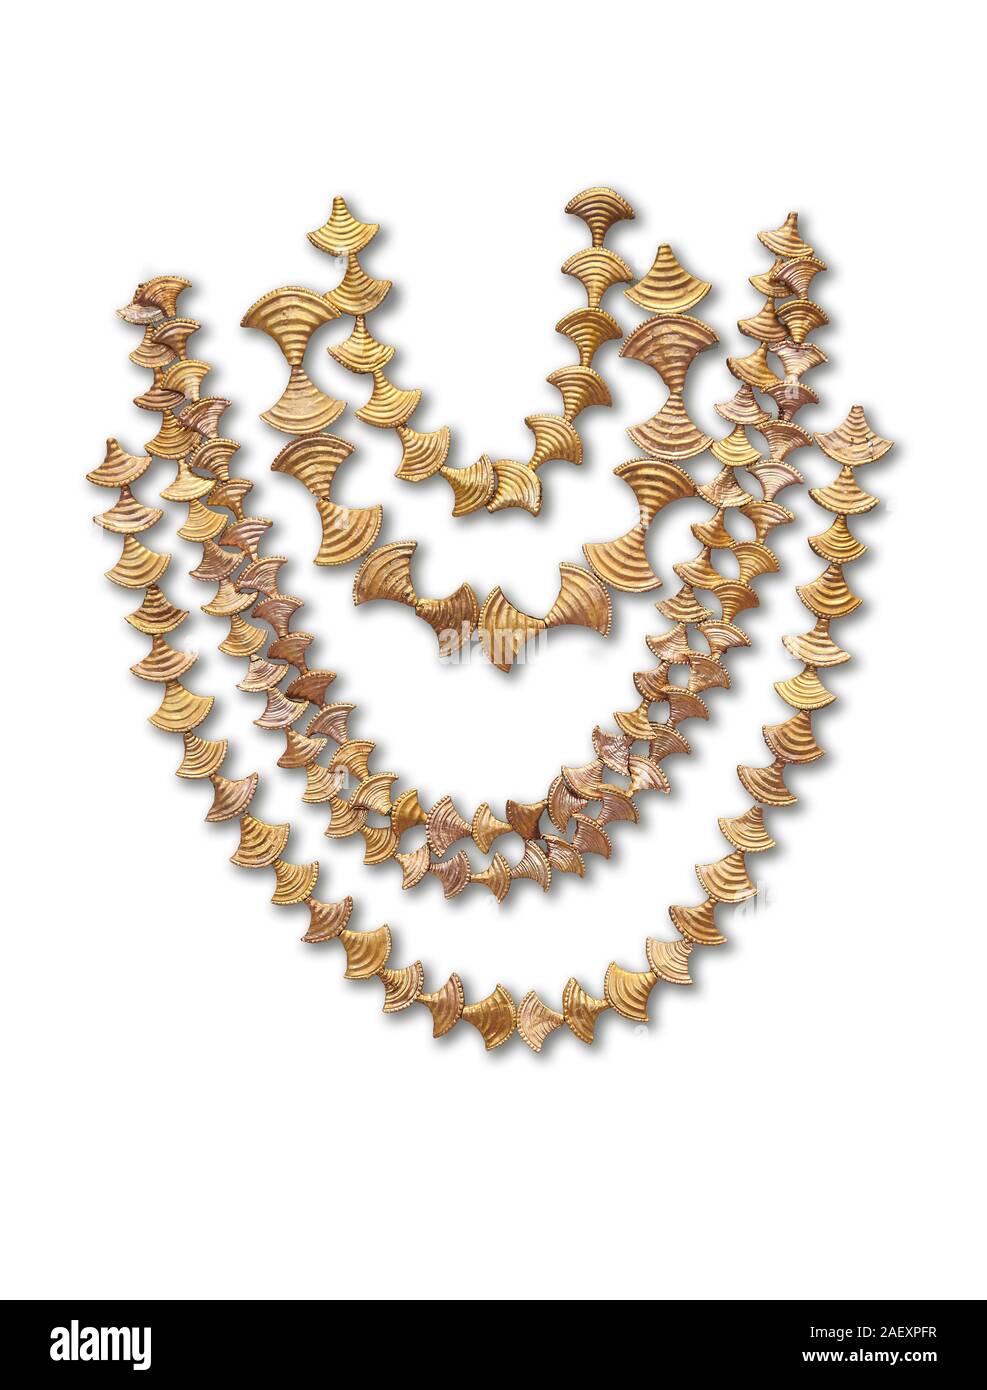 Mykenische gold Halsketten aus Mykene kammer Gräber, Griechenland. Archäologisches Nationalmuseum Athen. Weißer Hintergrund. Von oben nach unten: Top f Stockfoto